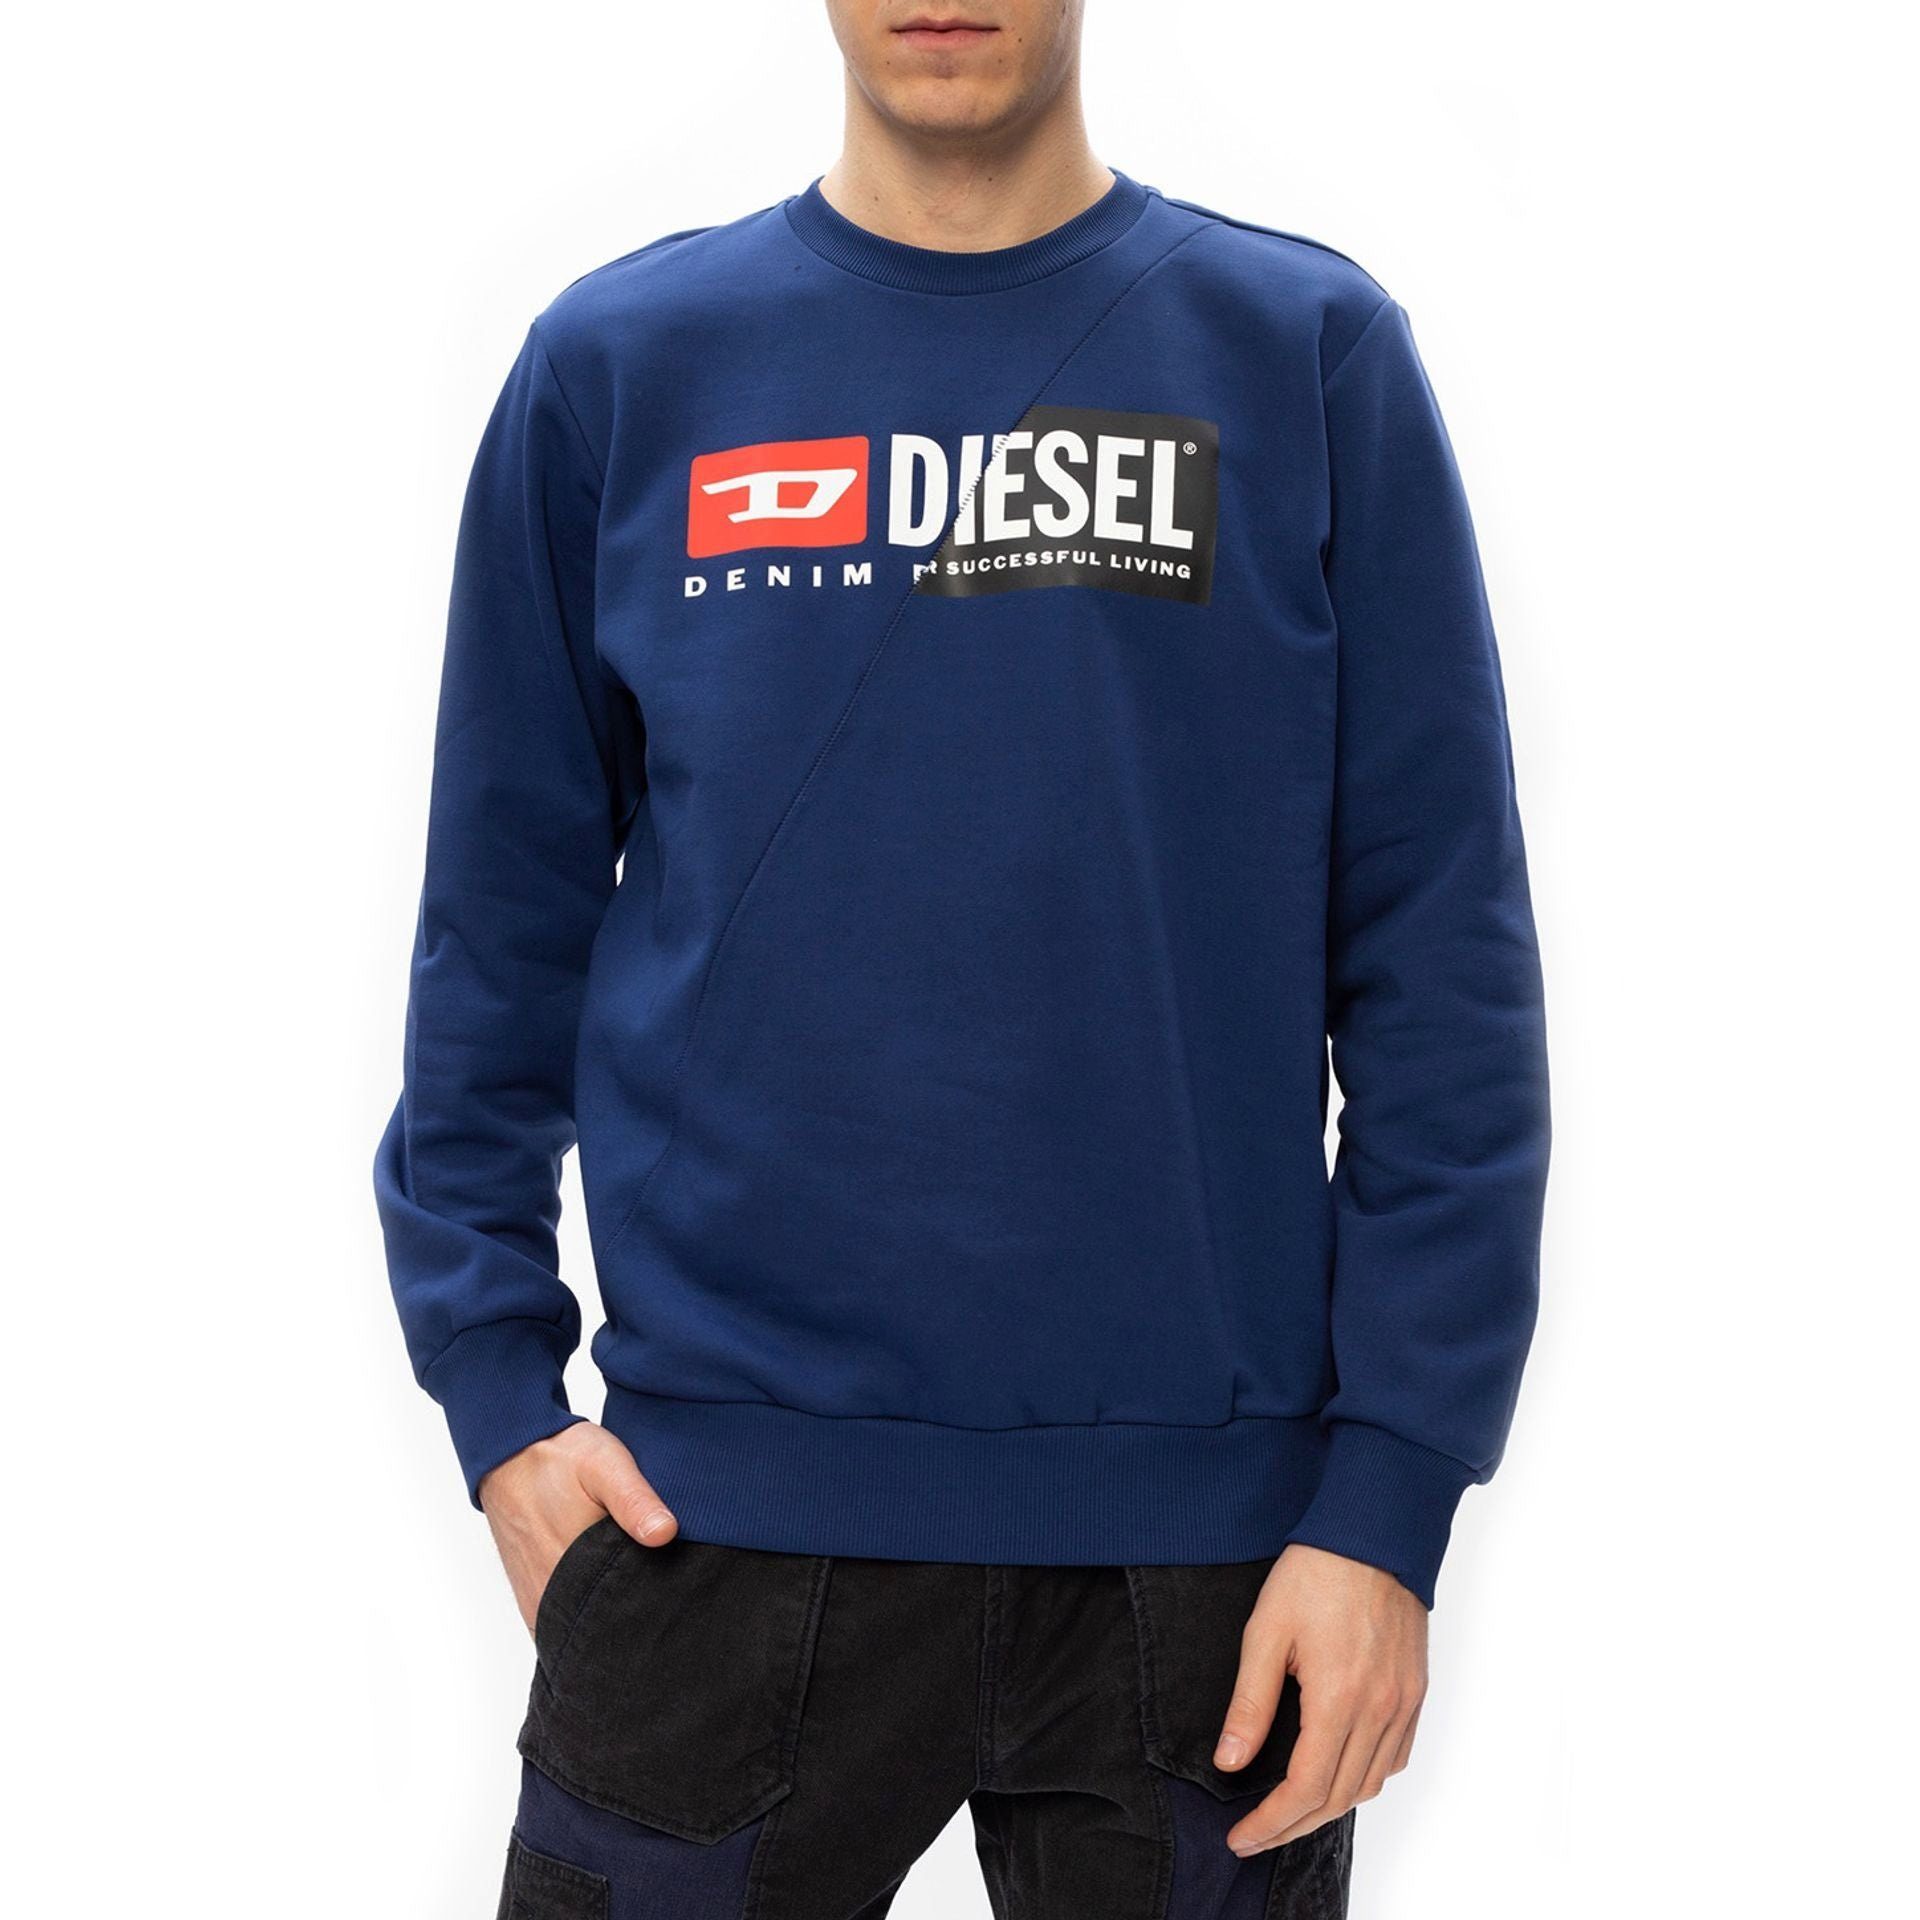 Blau - neues Ihr und Sweatshirt Frühjahr/Sommer Diesel Diesel Komfort Diesel Kollektion, Herren Stil Sweatshirt wartet! Sweatshirt